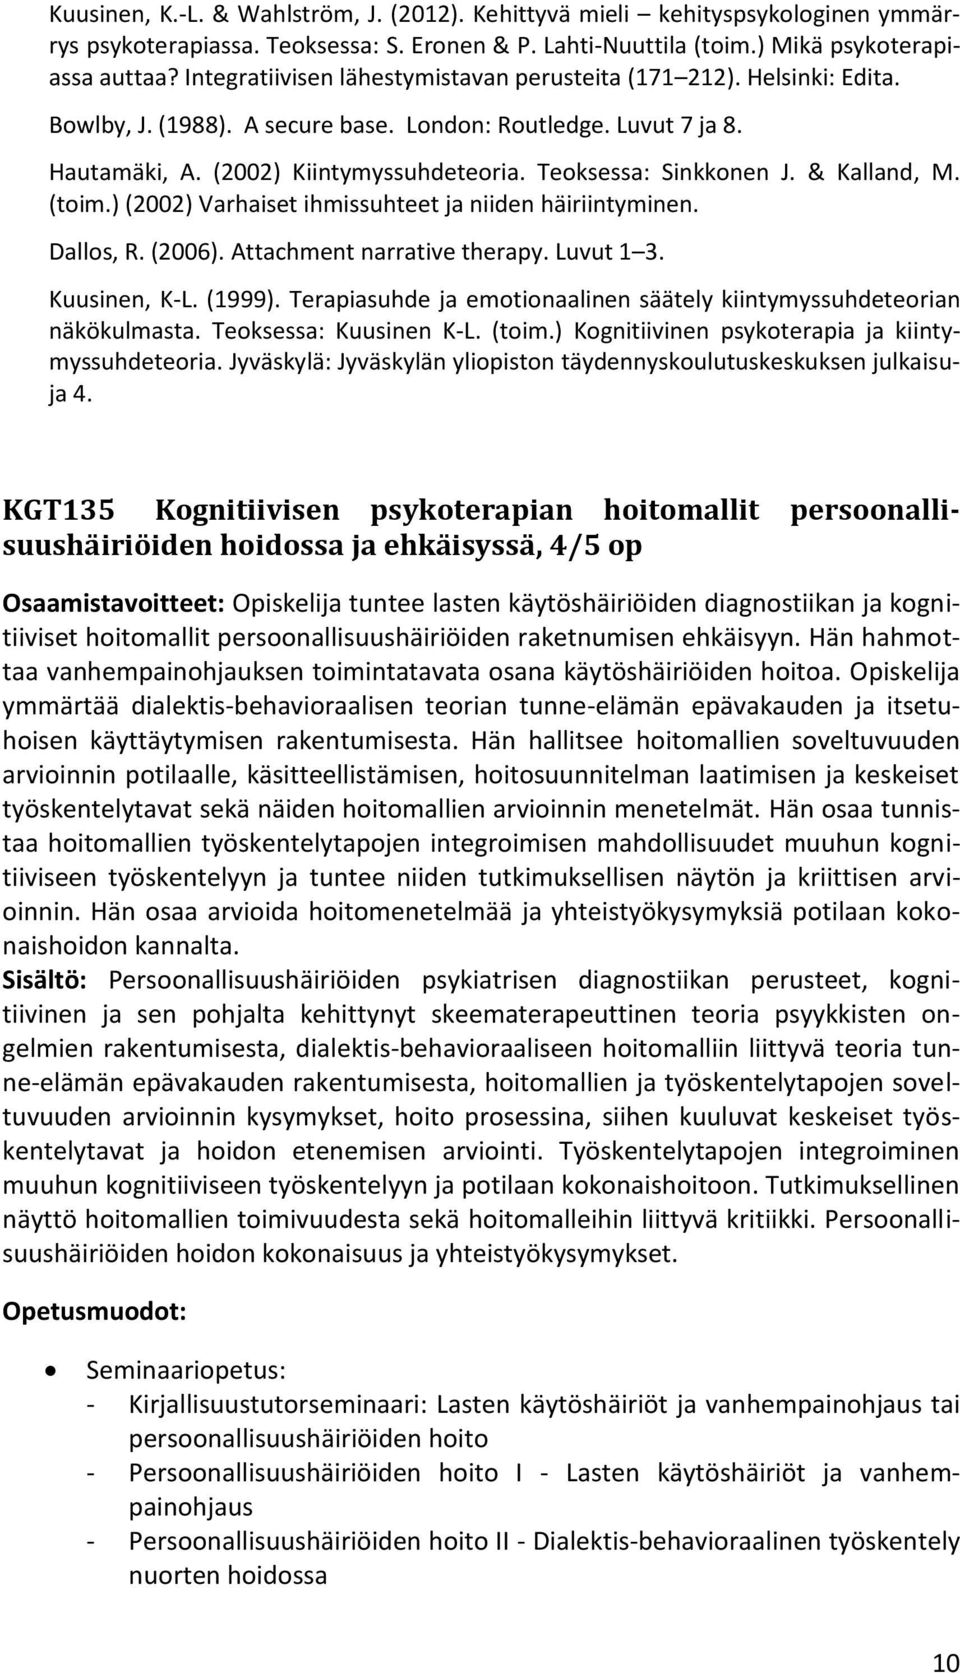 Teoksessa: Sinkkonen J. & Kalland, M. (toim.) (2002) Varhaiset ihmissuhteet ja niiden häiriintyminen. Dallos, R. (2006). Attachment narrative therapy. Luvut 1 3. Kuusinen, K-L. (1999).